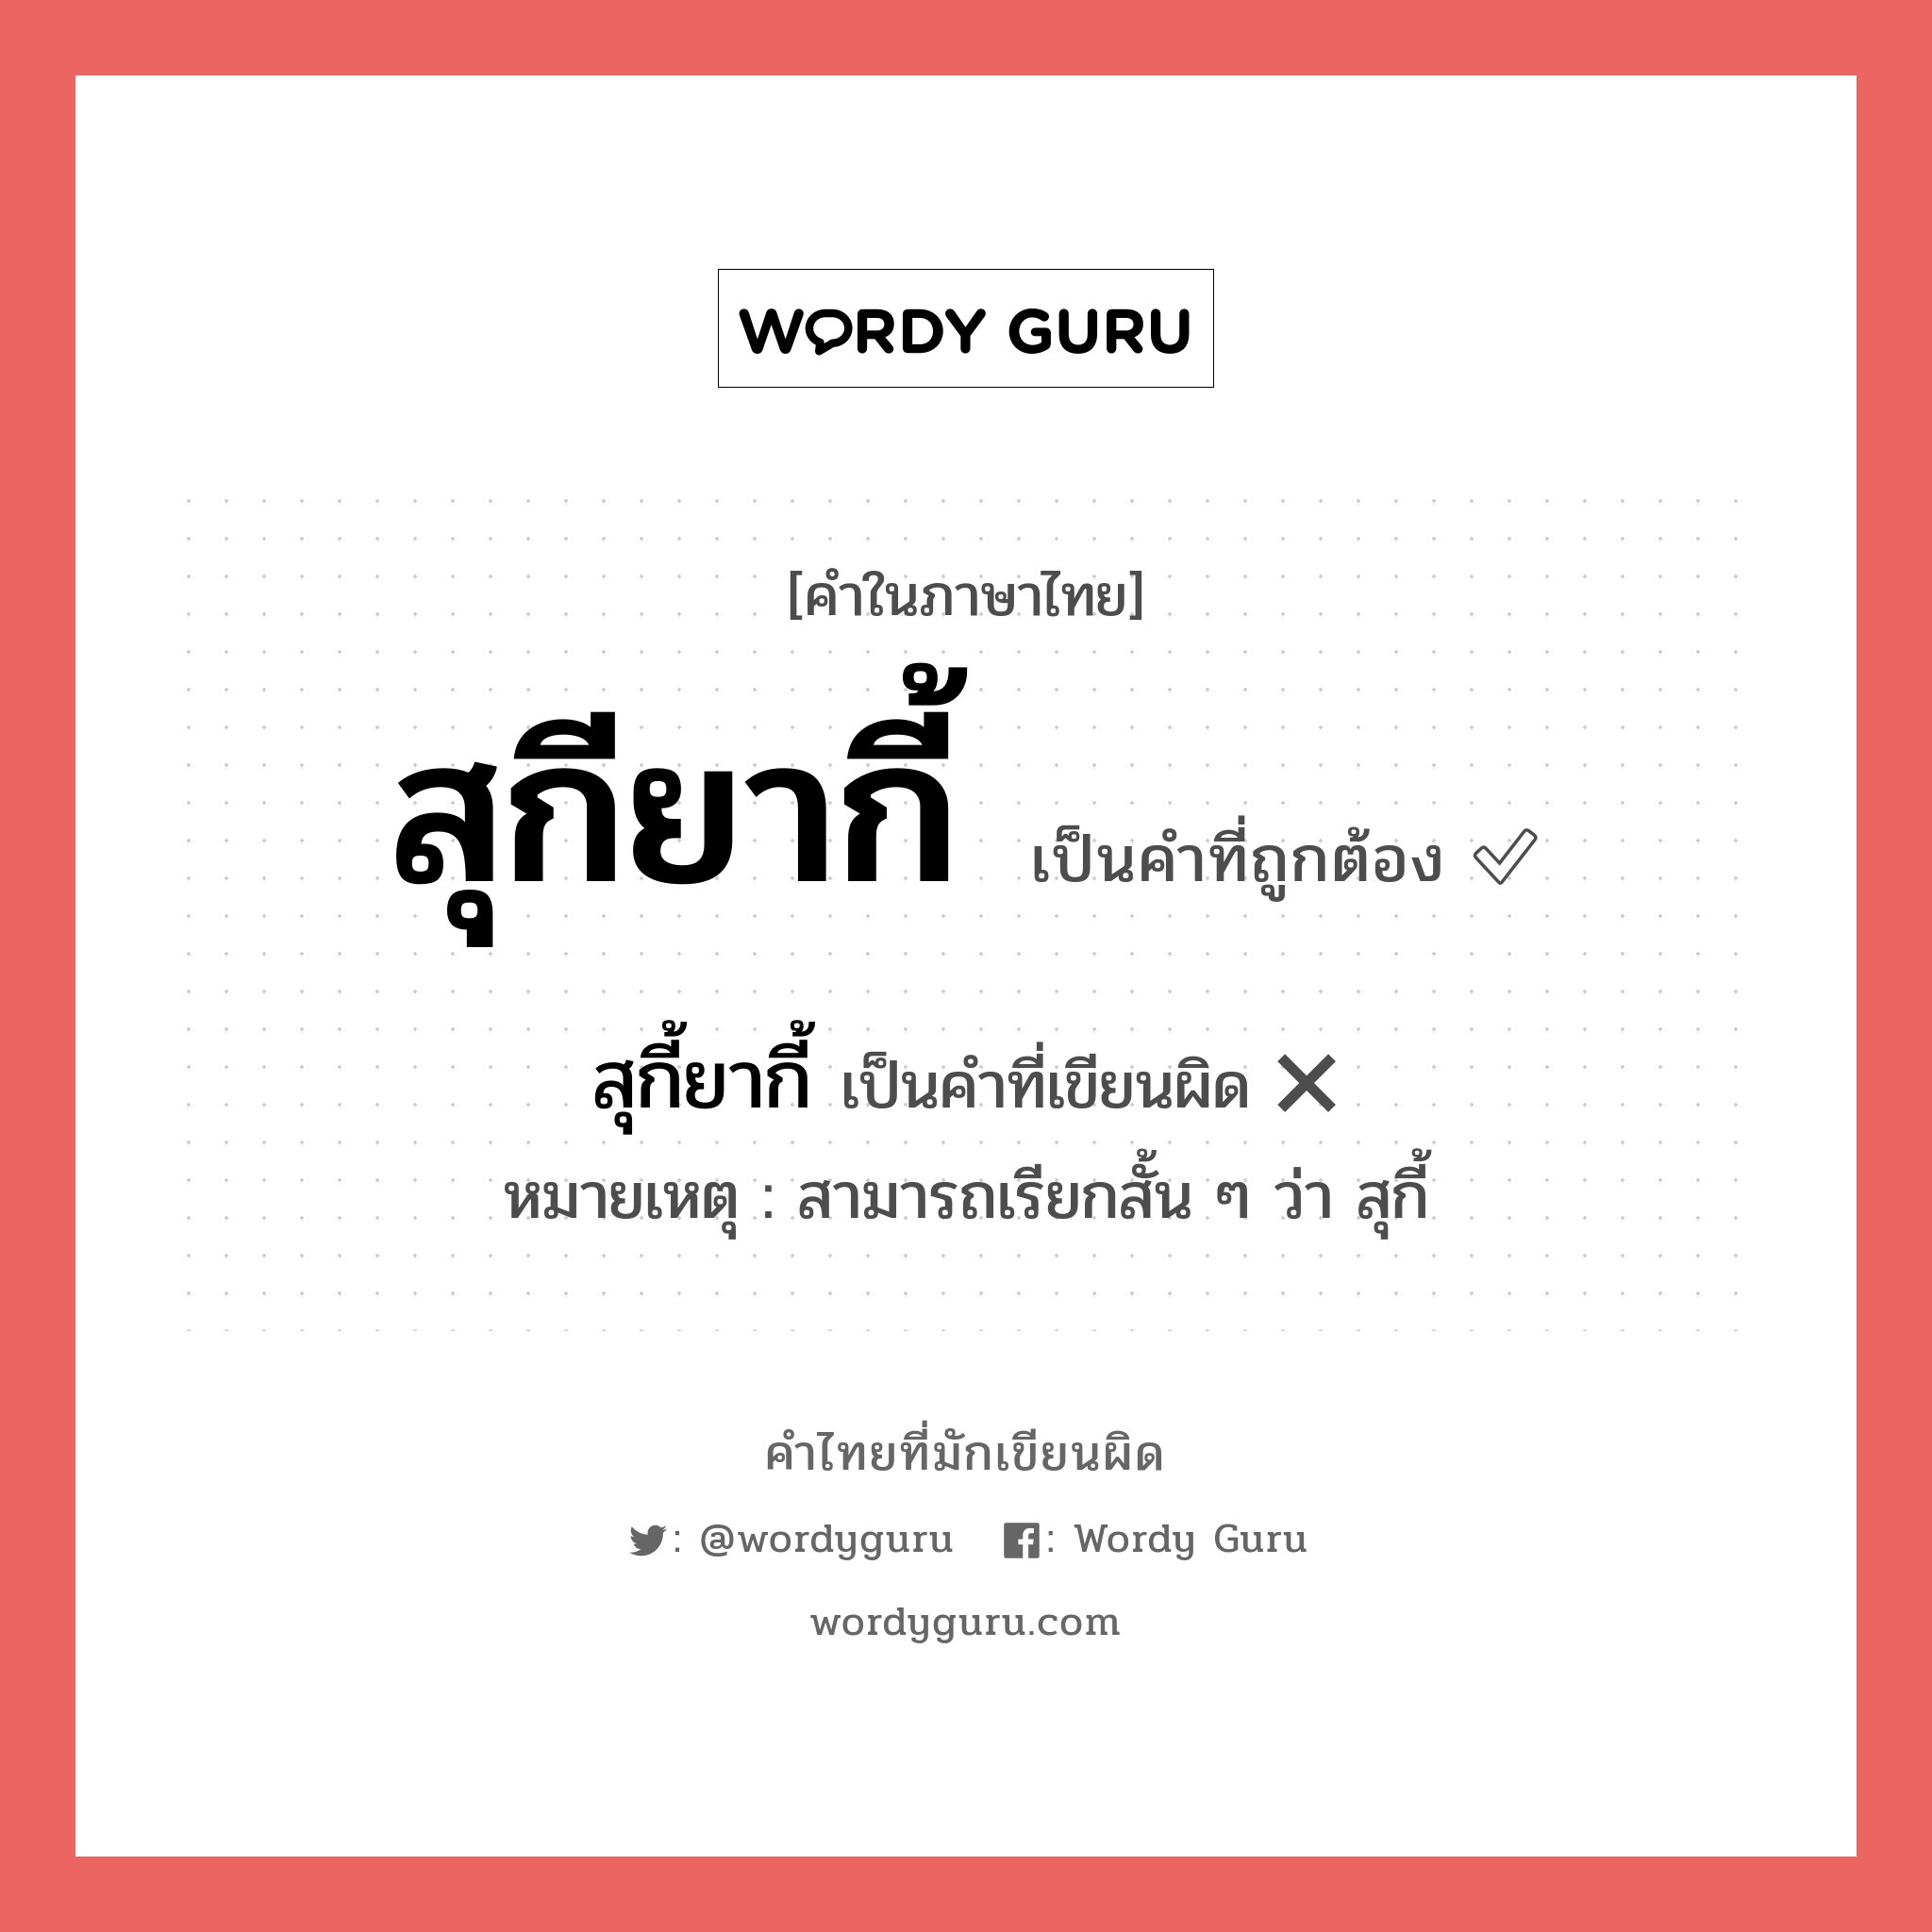 สุกี้ยากี้ หรือ สุกียากี้ คำไหนเขียนถูก?, คำในภาษาไทยที่มักเขียนผิด สุกี้ยากี้ คำที่ผิด ❌ สุกียากี้ หมายเหตุ สามารถเรียกสั้น ๆ ว่า สุกี้